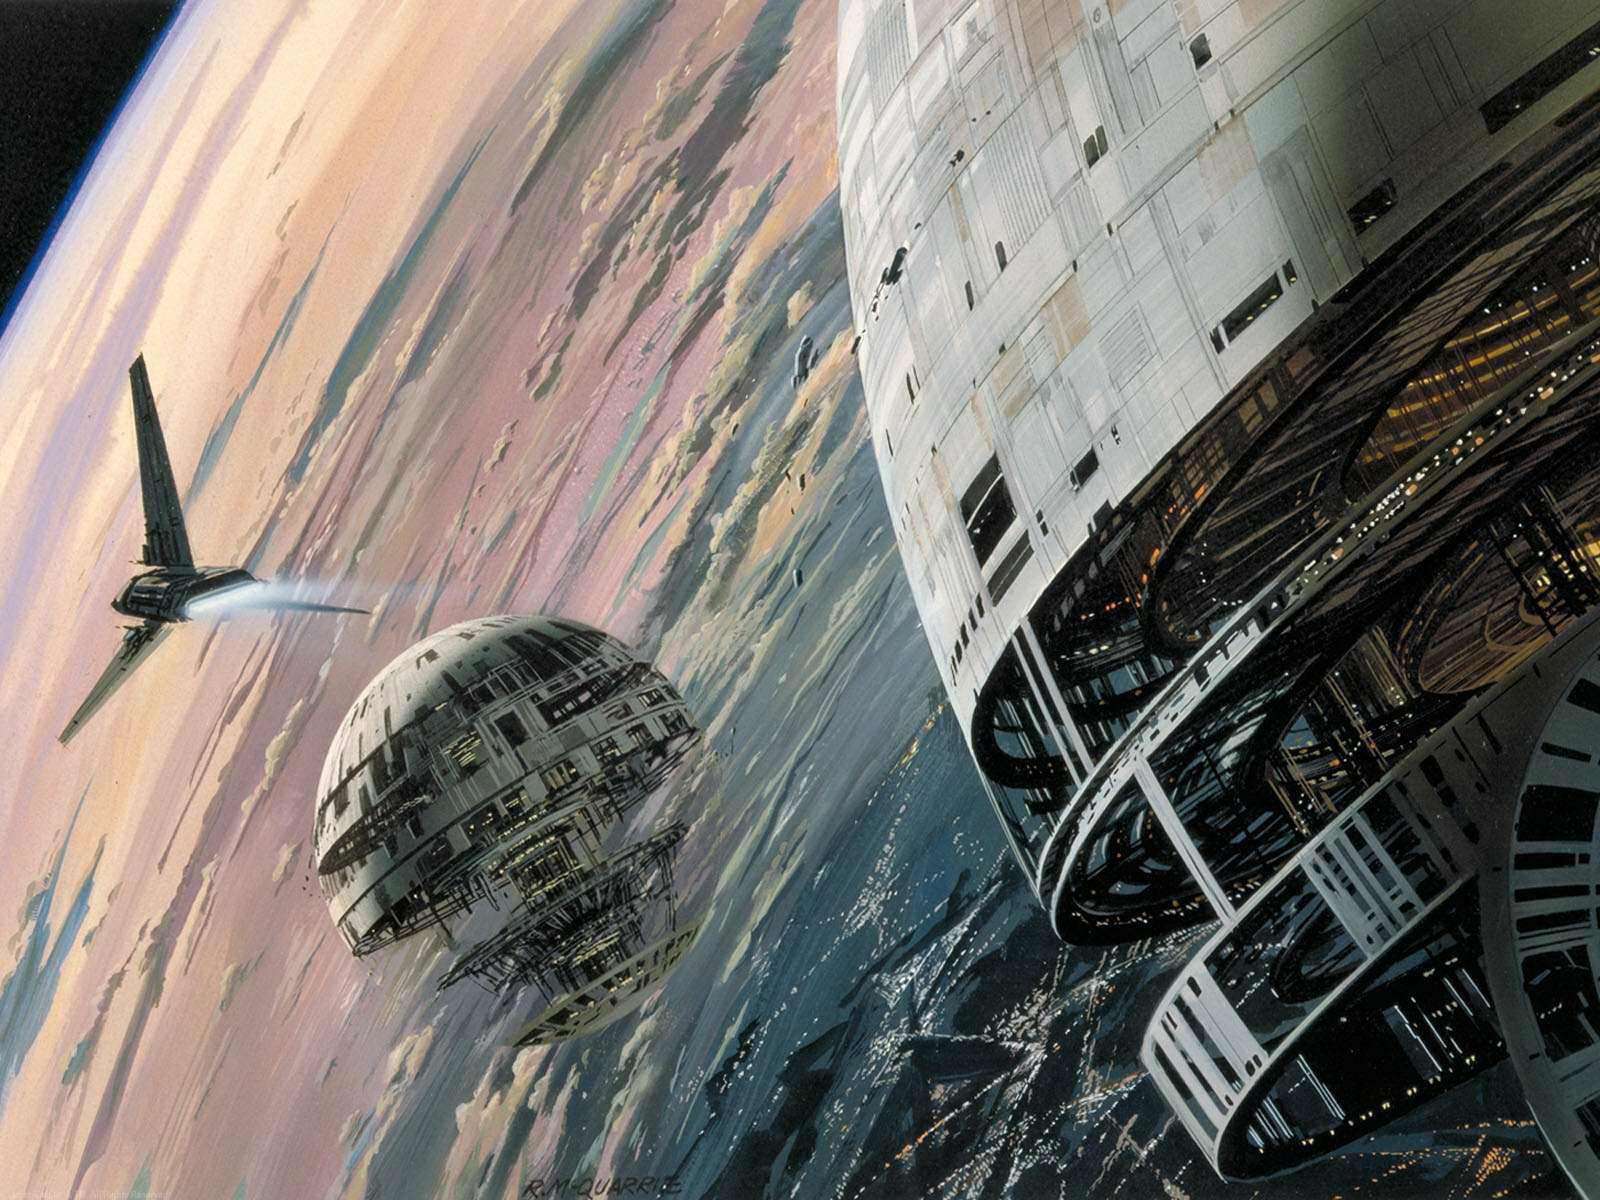 80 концептів для «Star Wars» від Ralph McQuarrie